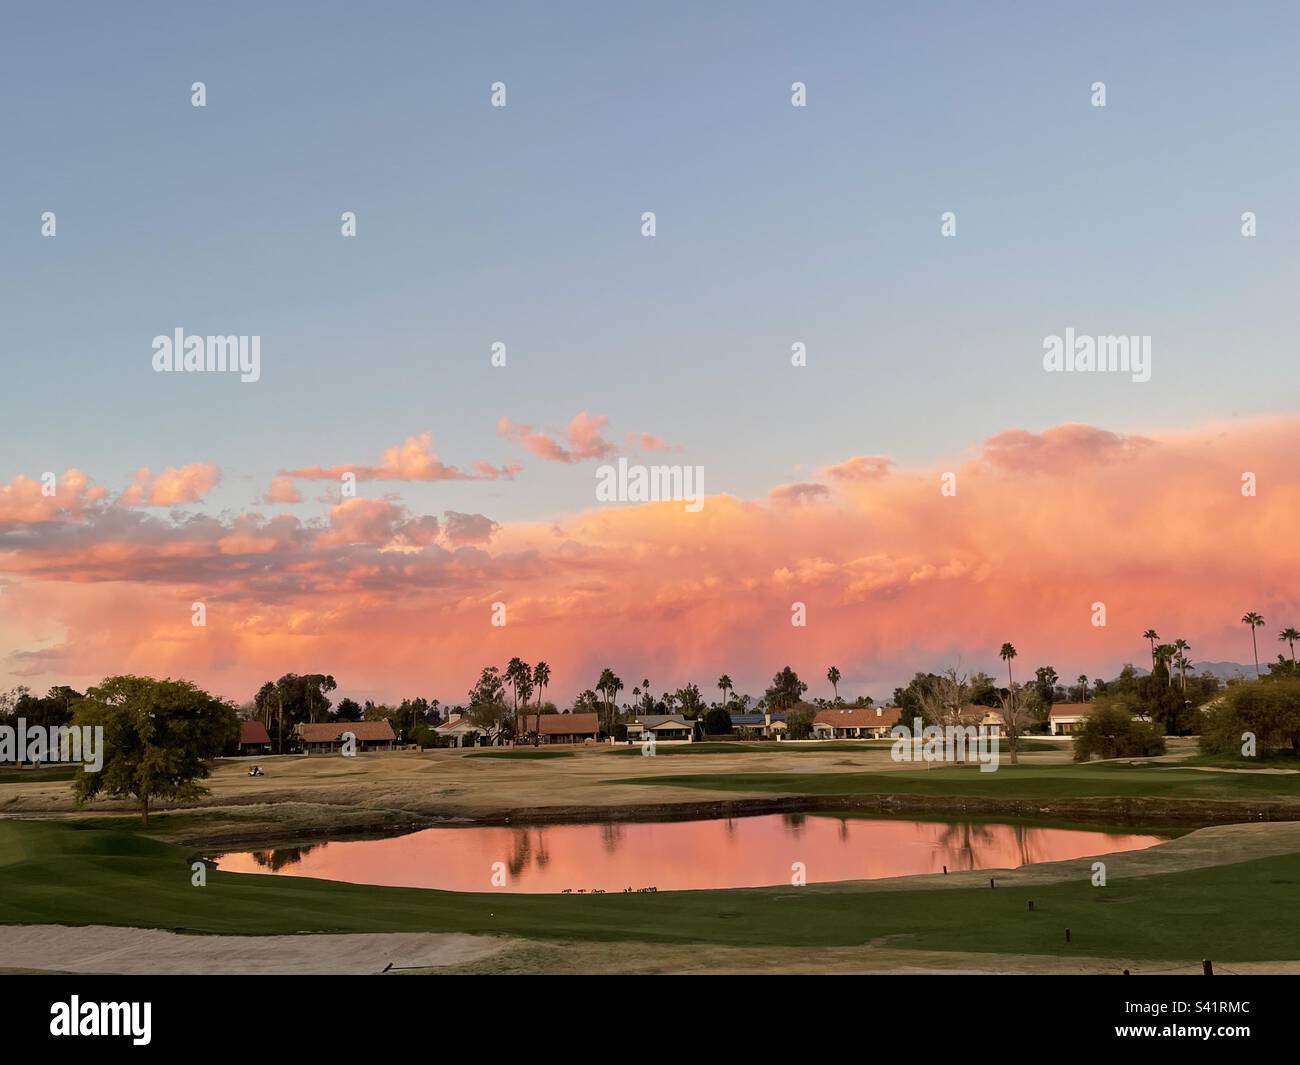 Coucher de soleil en Arizona, parcours de golf de Scottsdale, vert, fairway, pièges à sable, Pond Reflections, nuages roses et jaunes, Scottsdale, AZ, Etats-Unis Banque D'Images